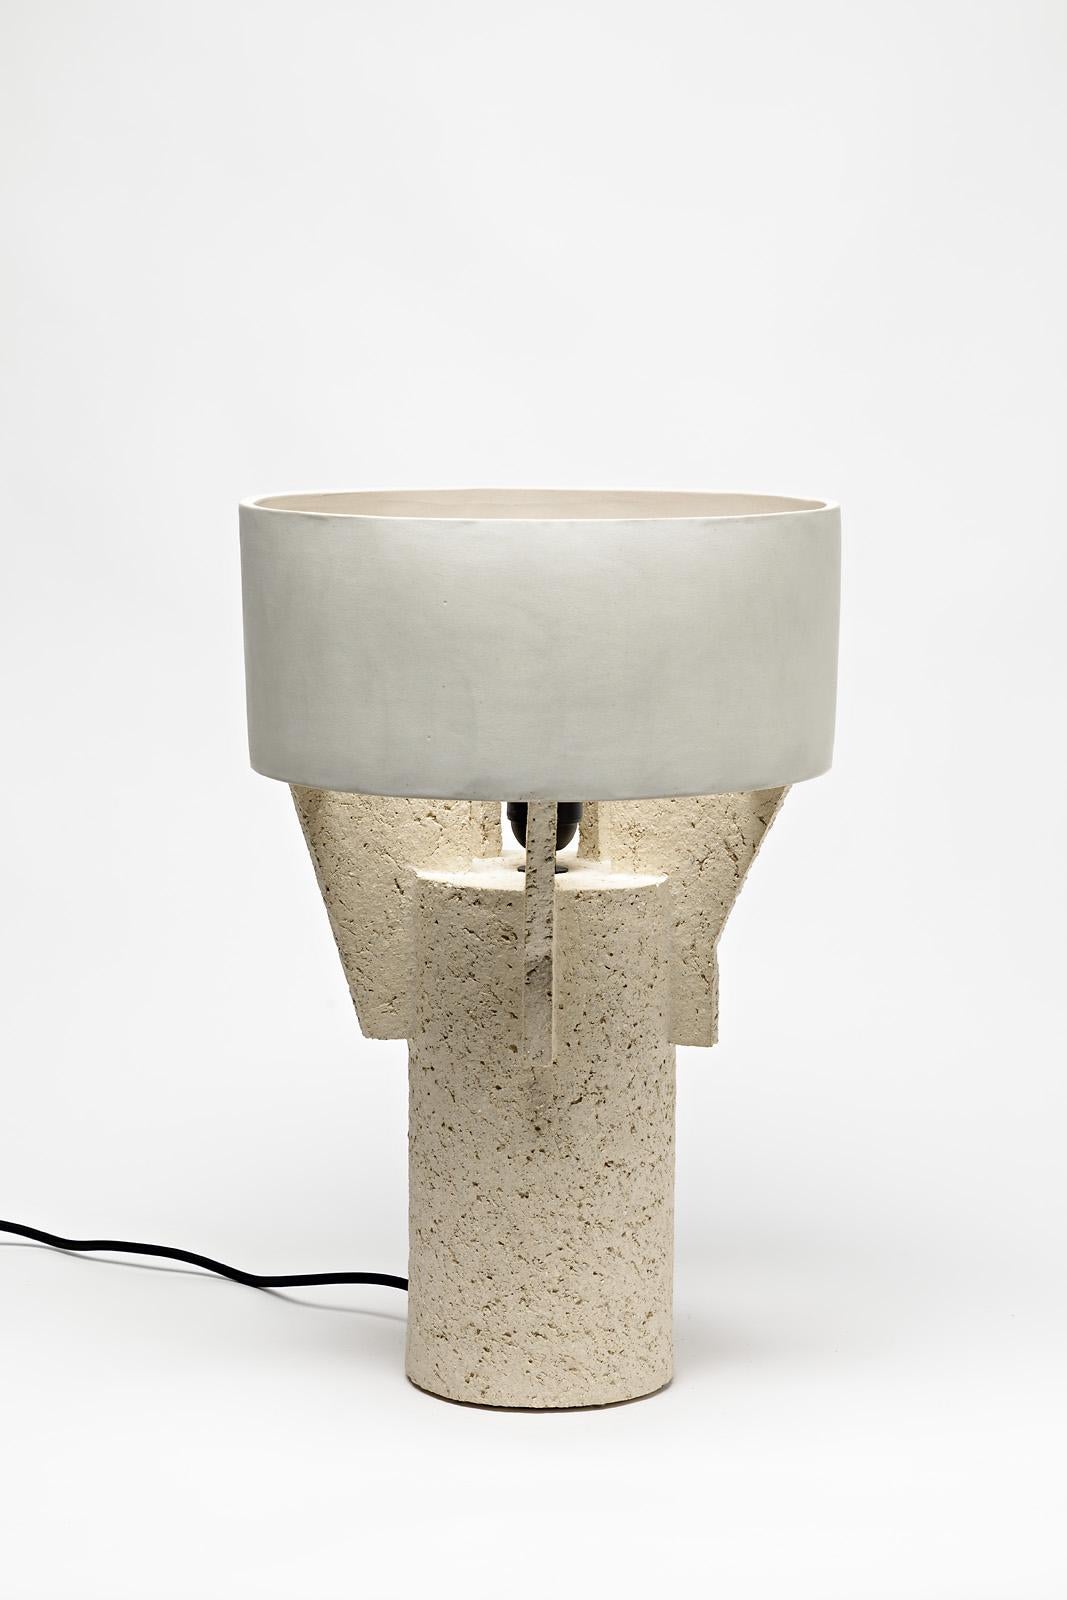 Keramik-Tischlampe von Denis Castaing mit weißer Glasurdekoration, 2019 (Beaux Arts)